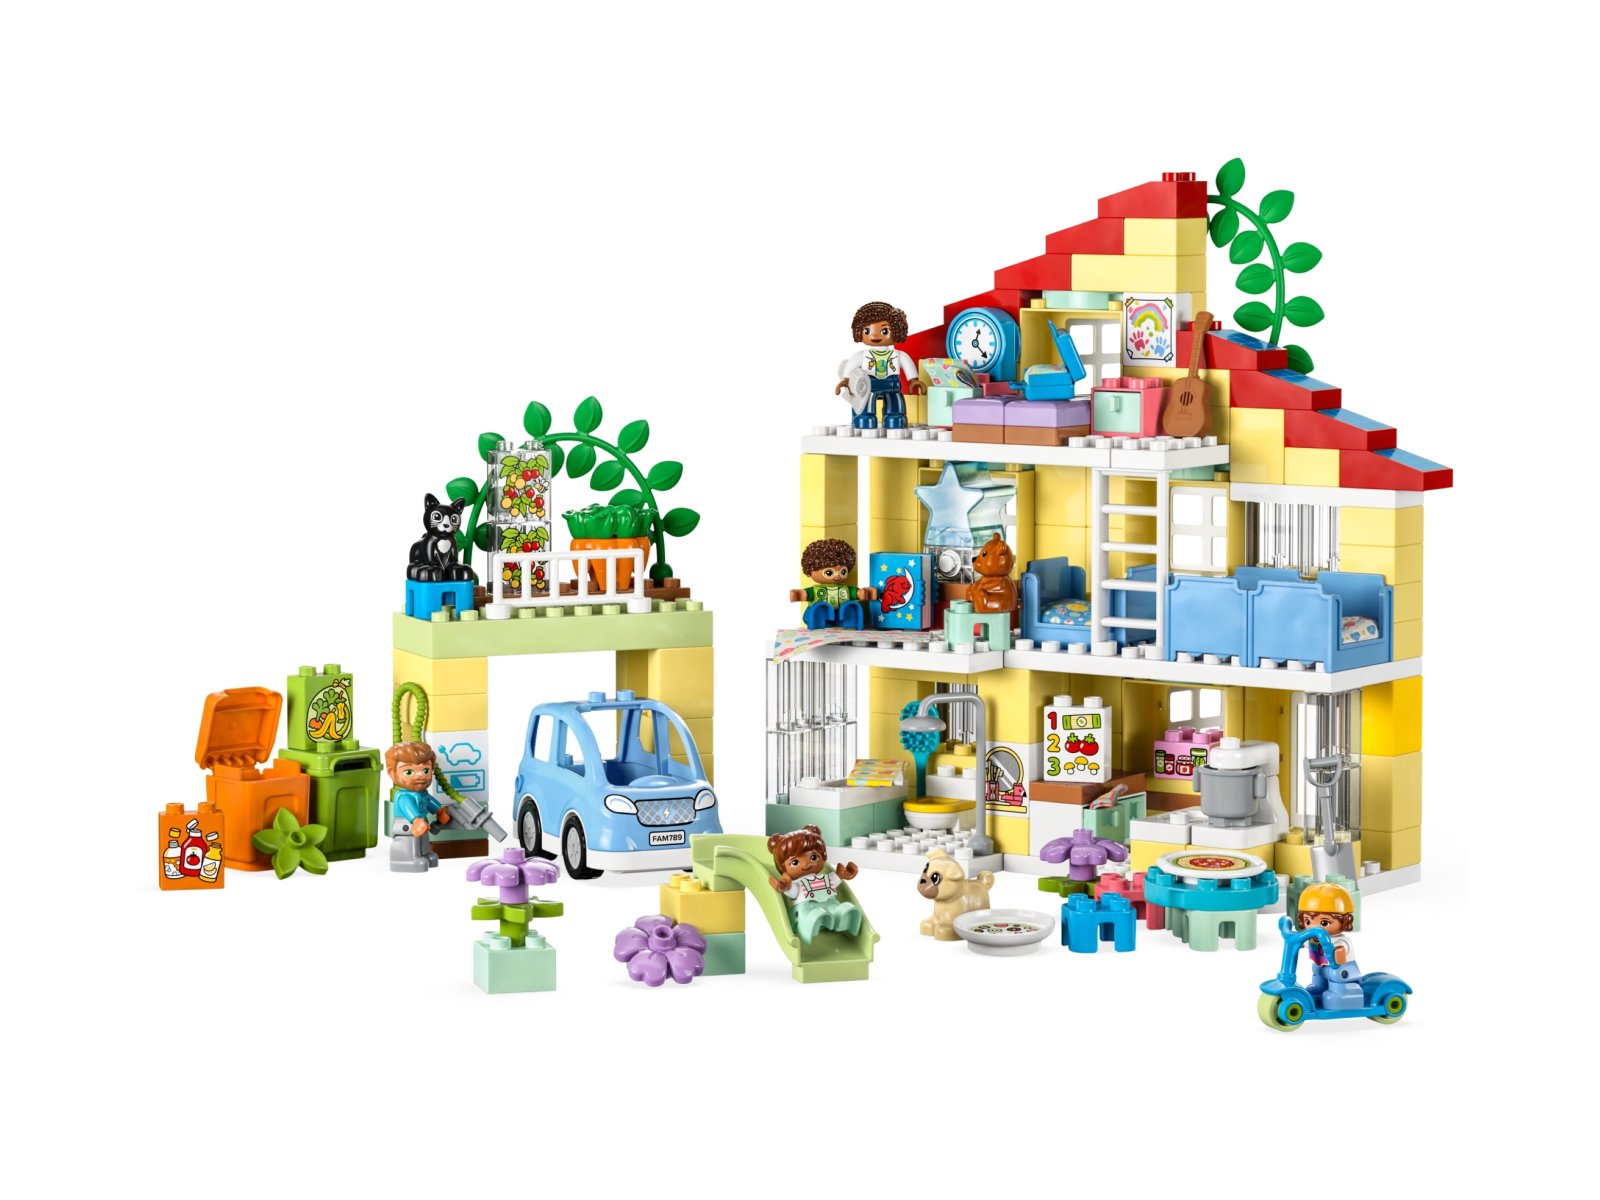 LEGO 10994 Duplo Dom rodzinny 3 w 1